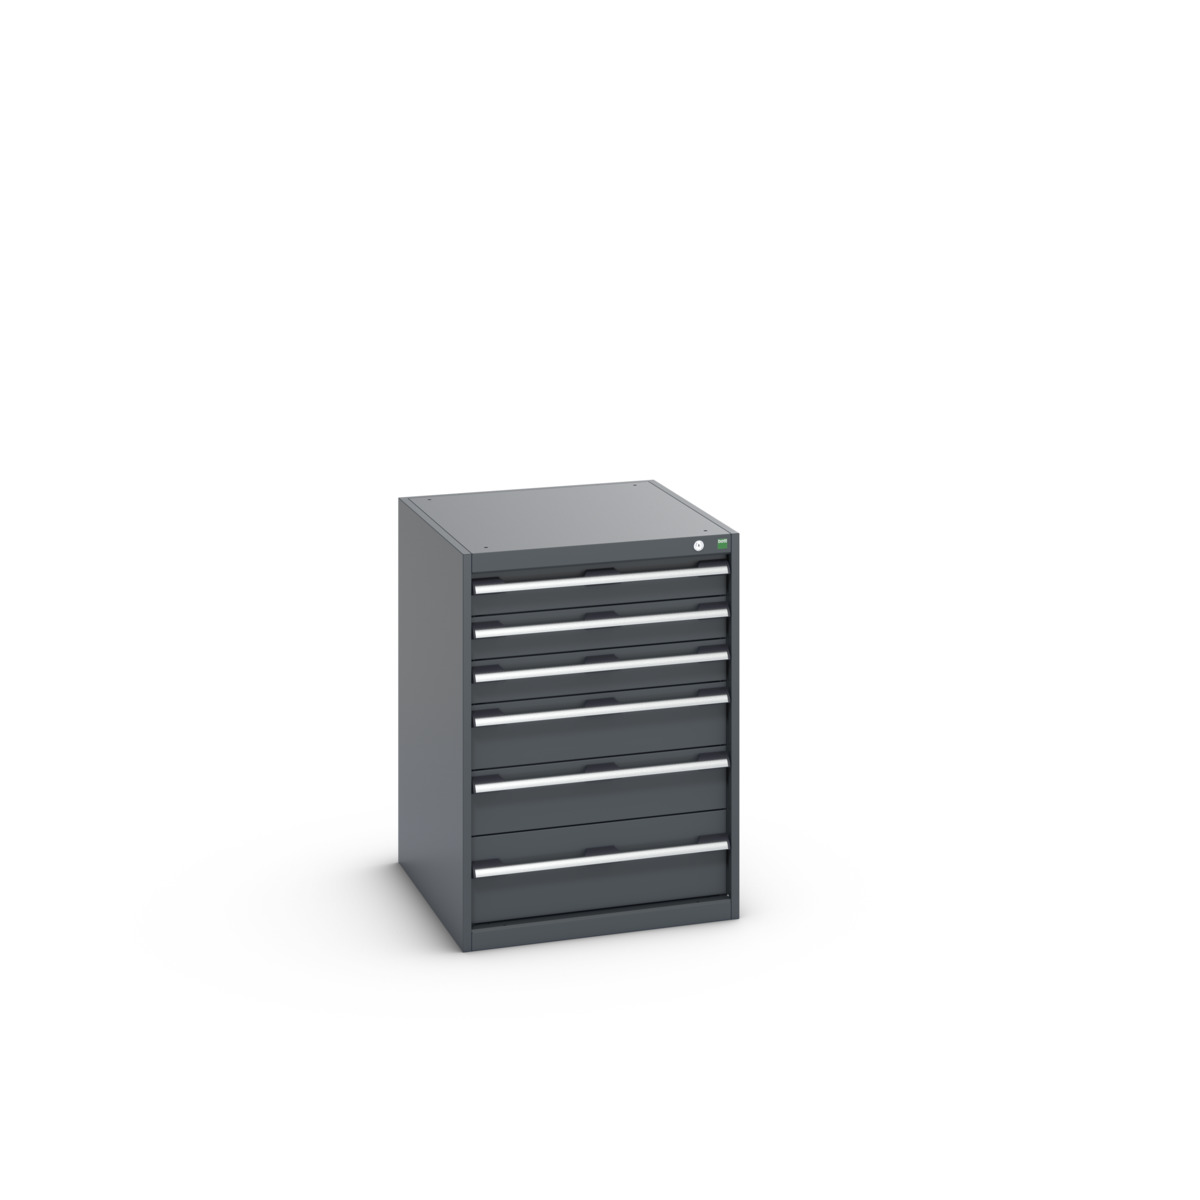 40027088.77V - cubio drawer cabinet